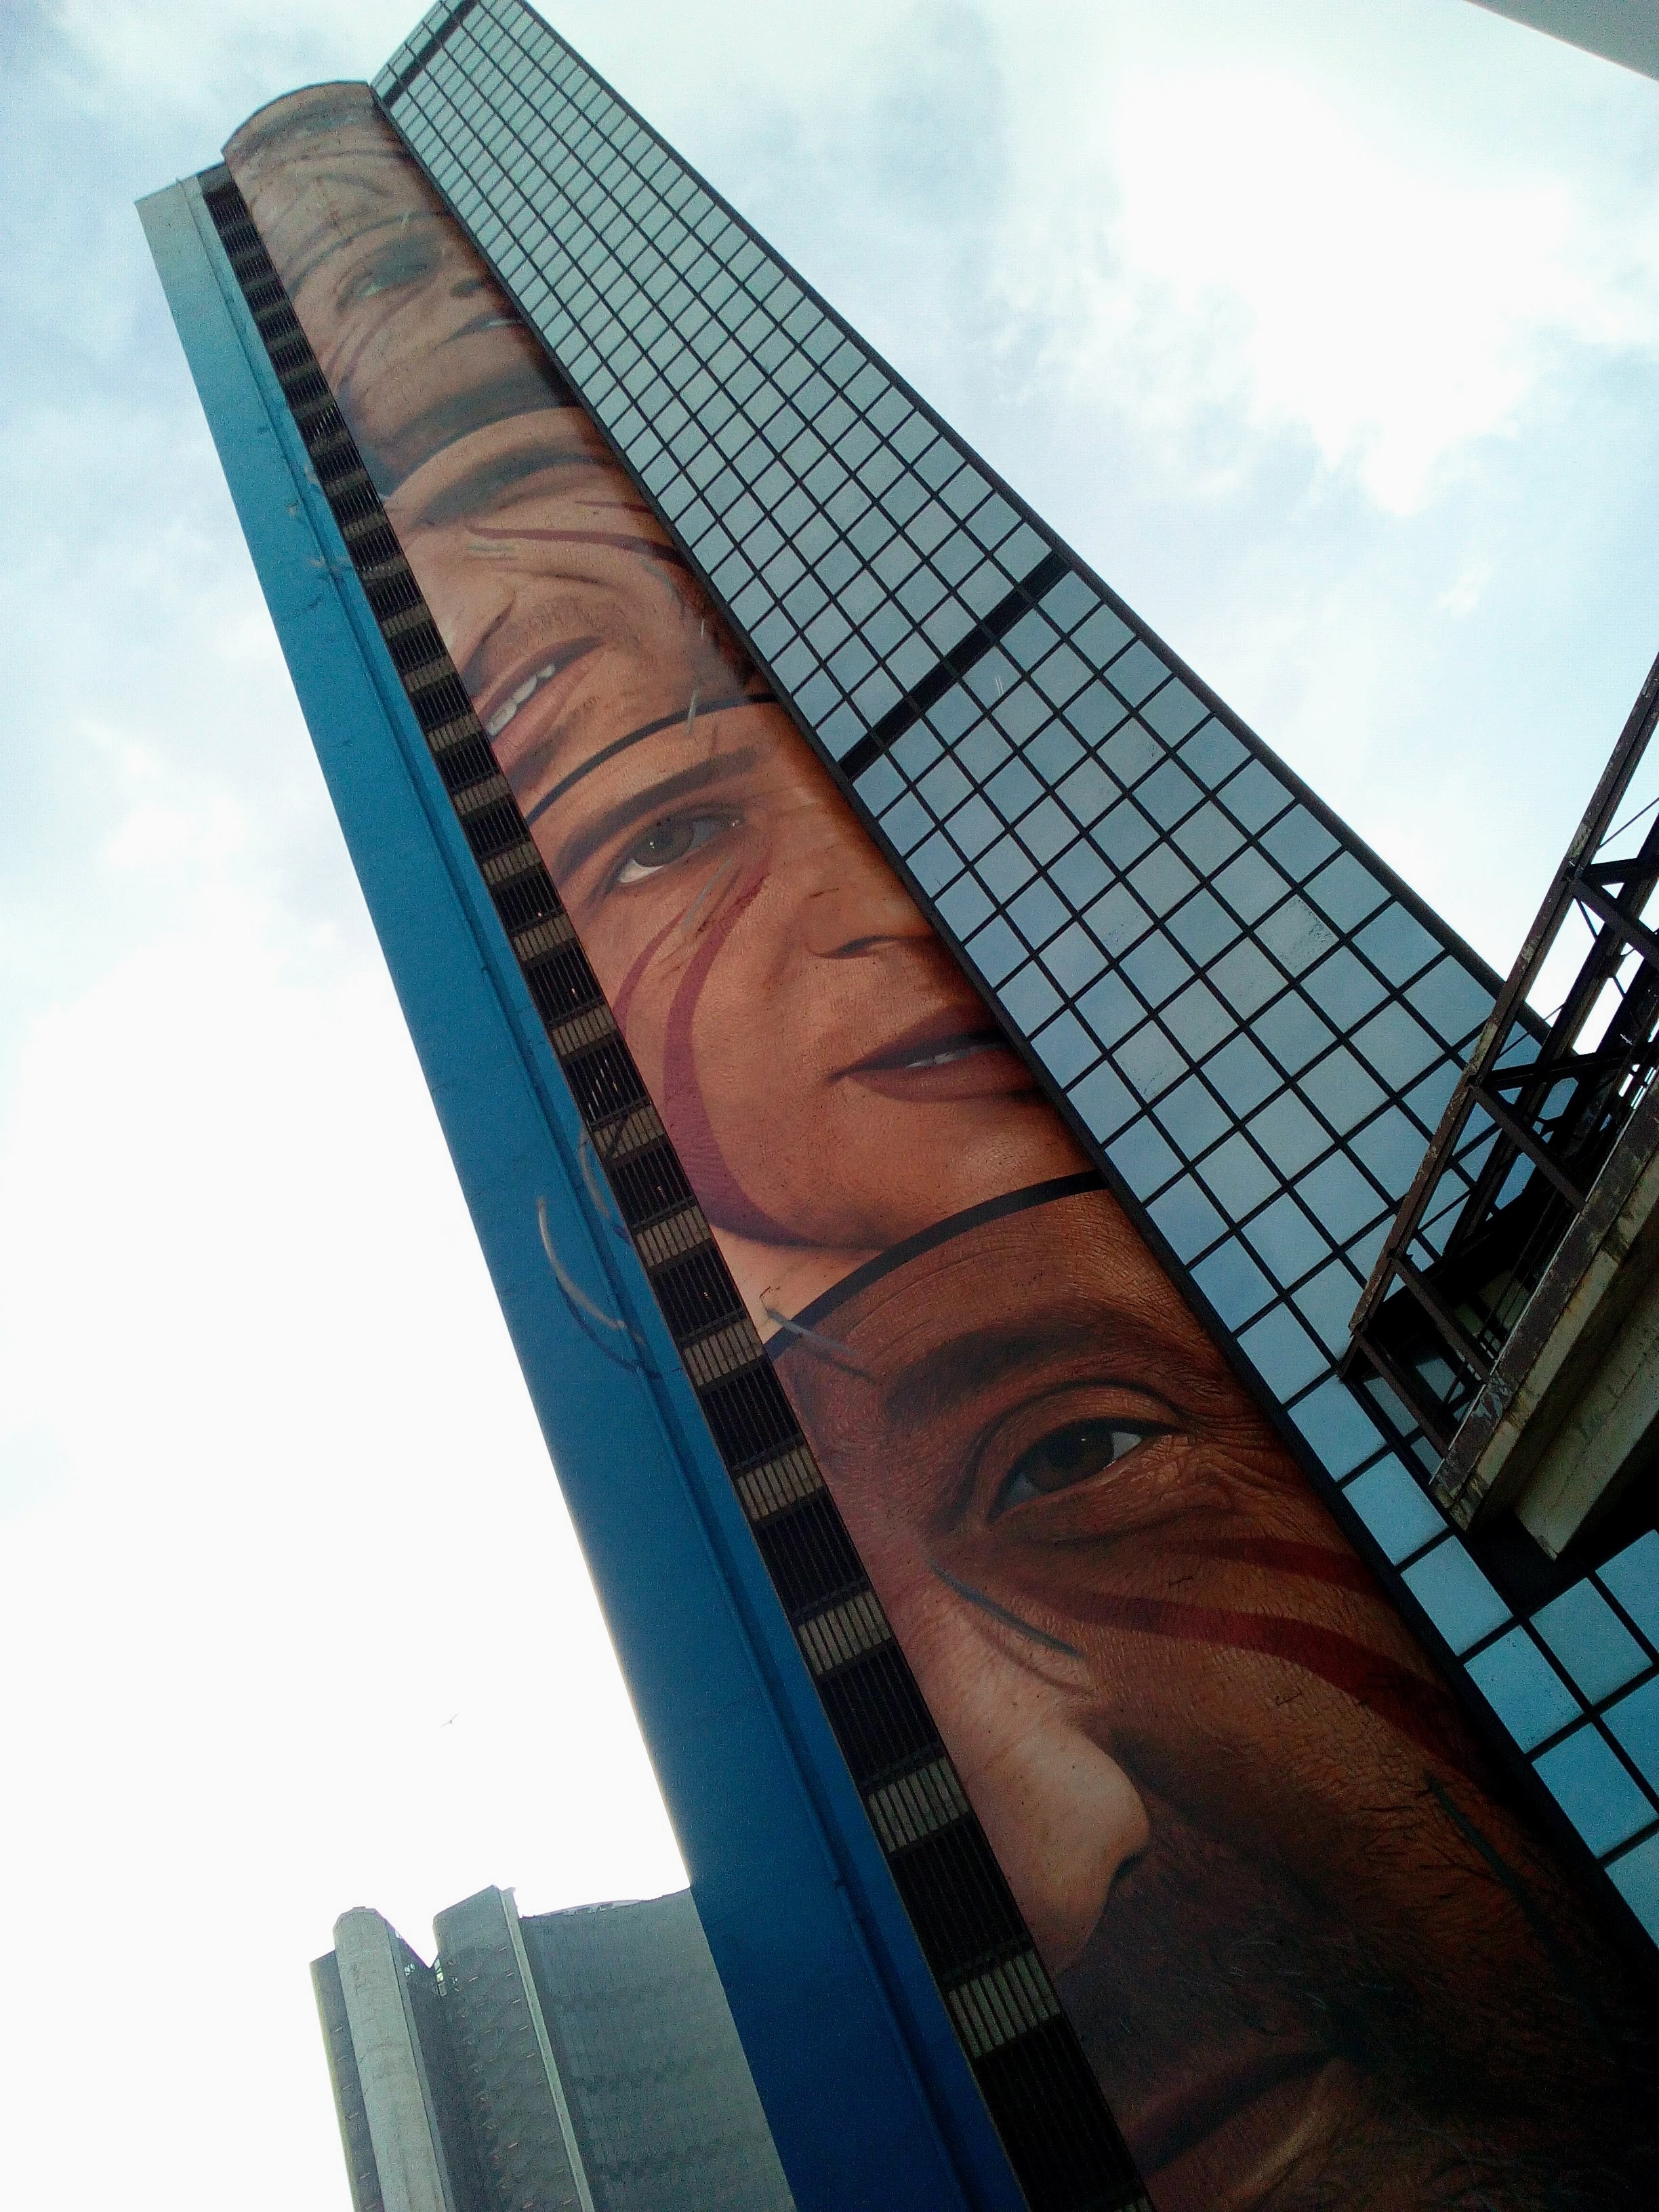 Il murales verticale di Jorit al Centro direzionale di Napoli per celebrare le Universiadi 2019